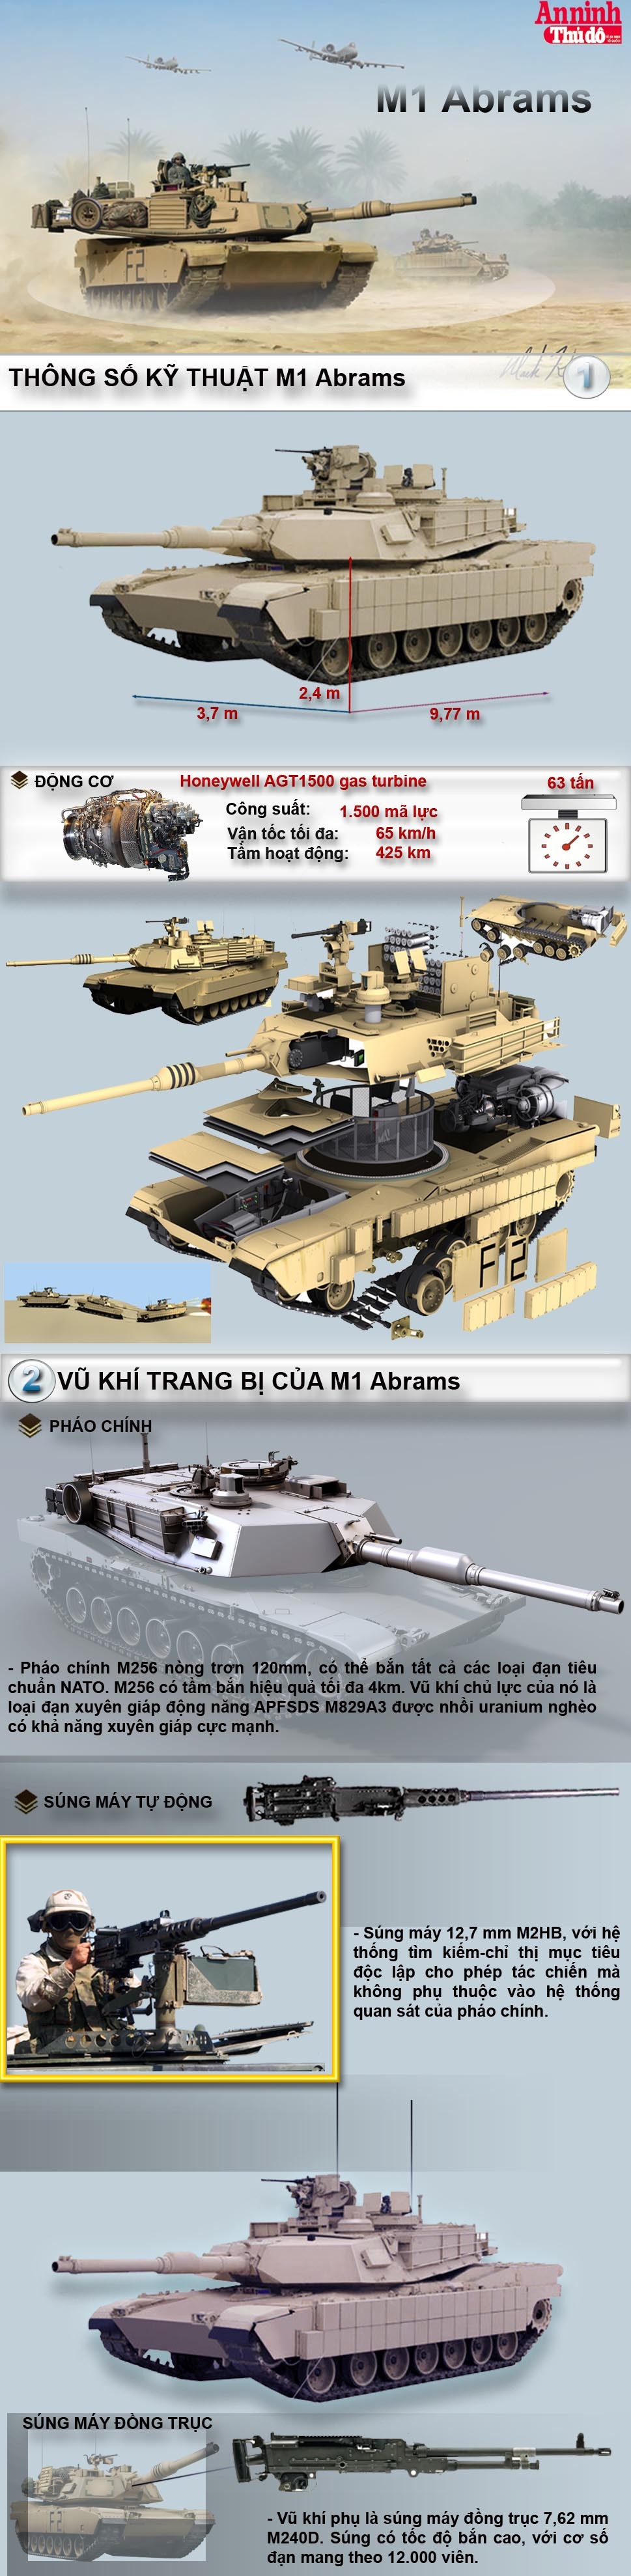 [Infographic] Xe tăng M1 Abrams - lô cốt di động của lục quân Mỹ ảnh 2